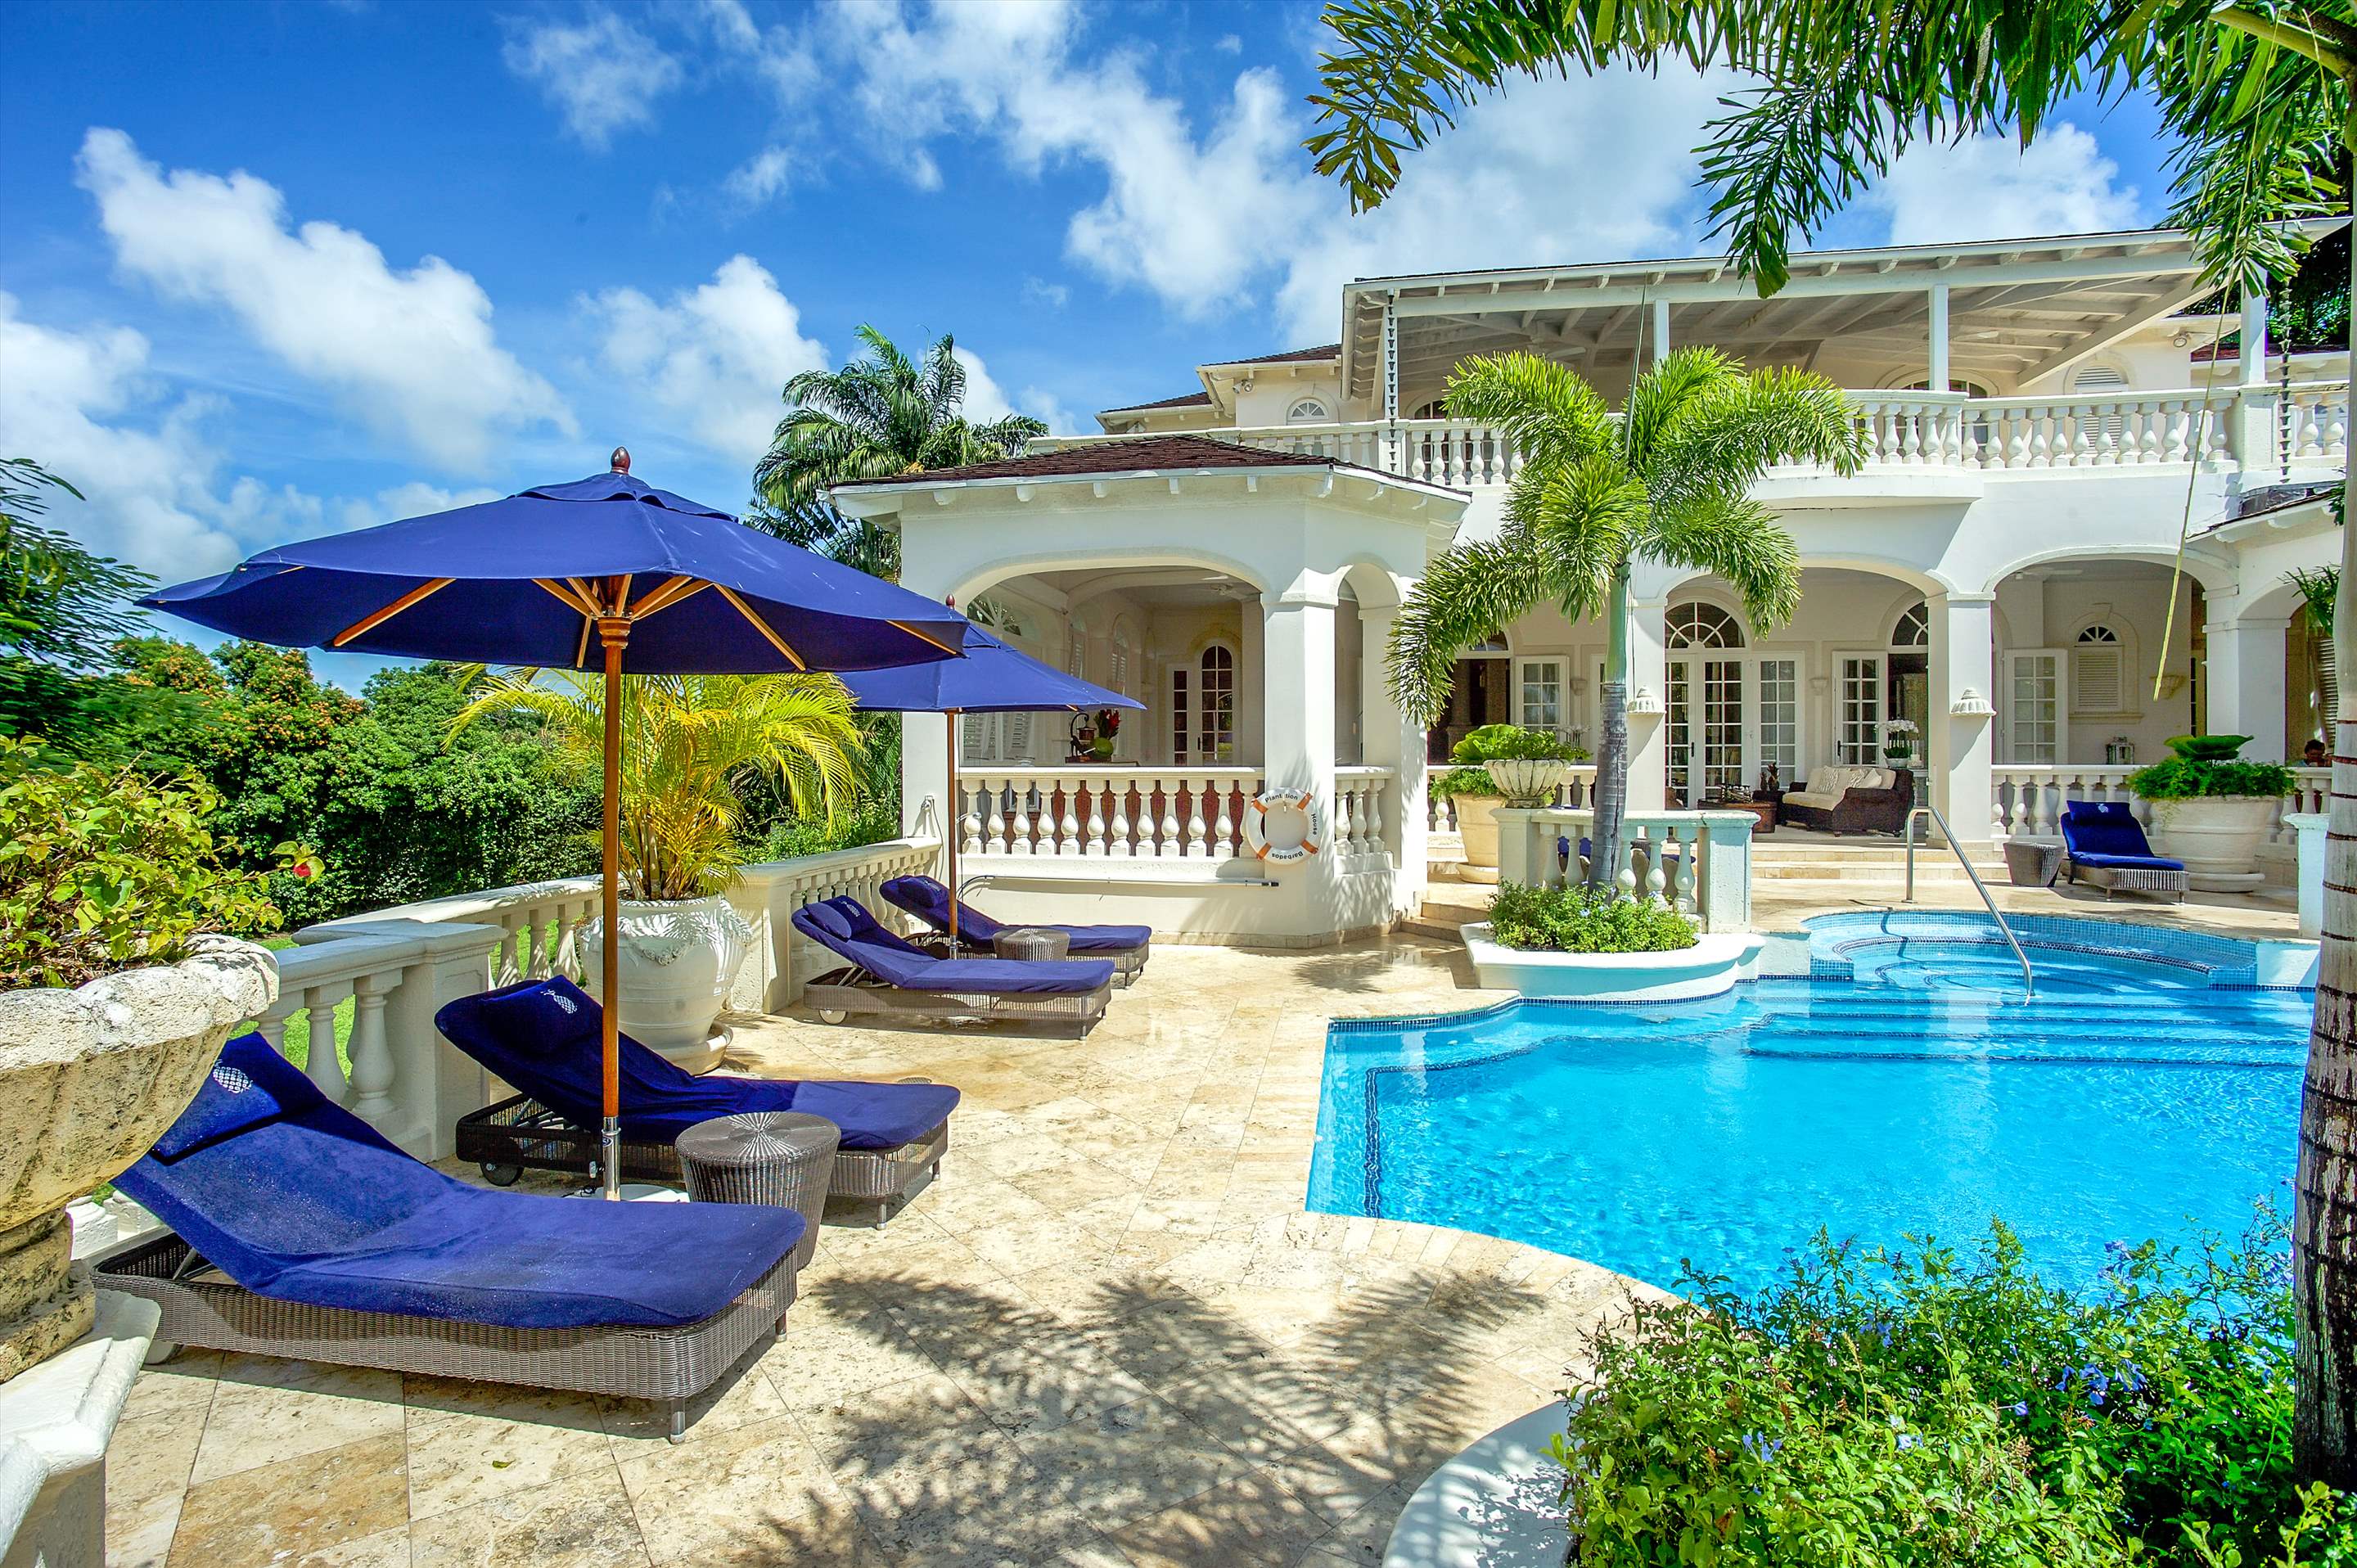 Plantation House, Royal Westmoreland, 4 bedroom, 4 bedroom villa in St. James & West Coast, Barbados Photo #22